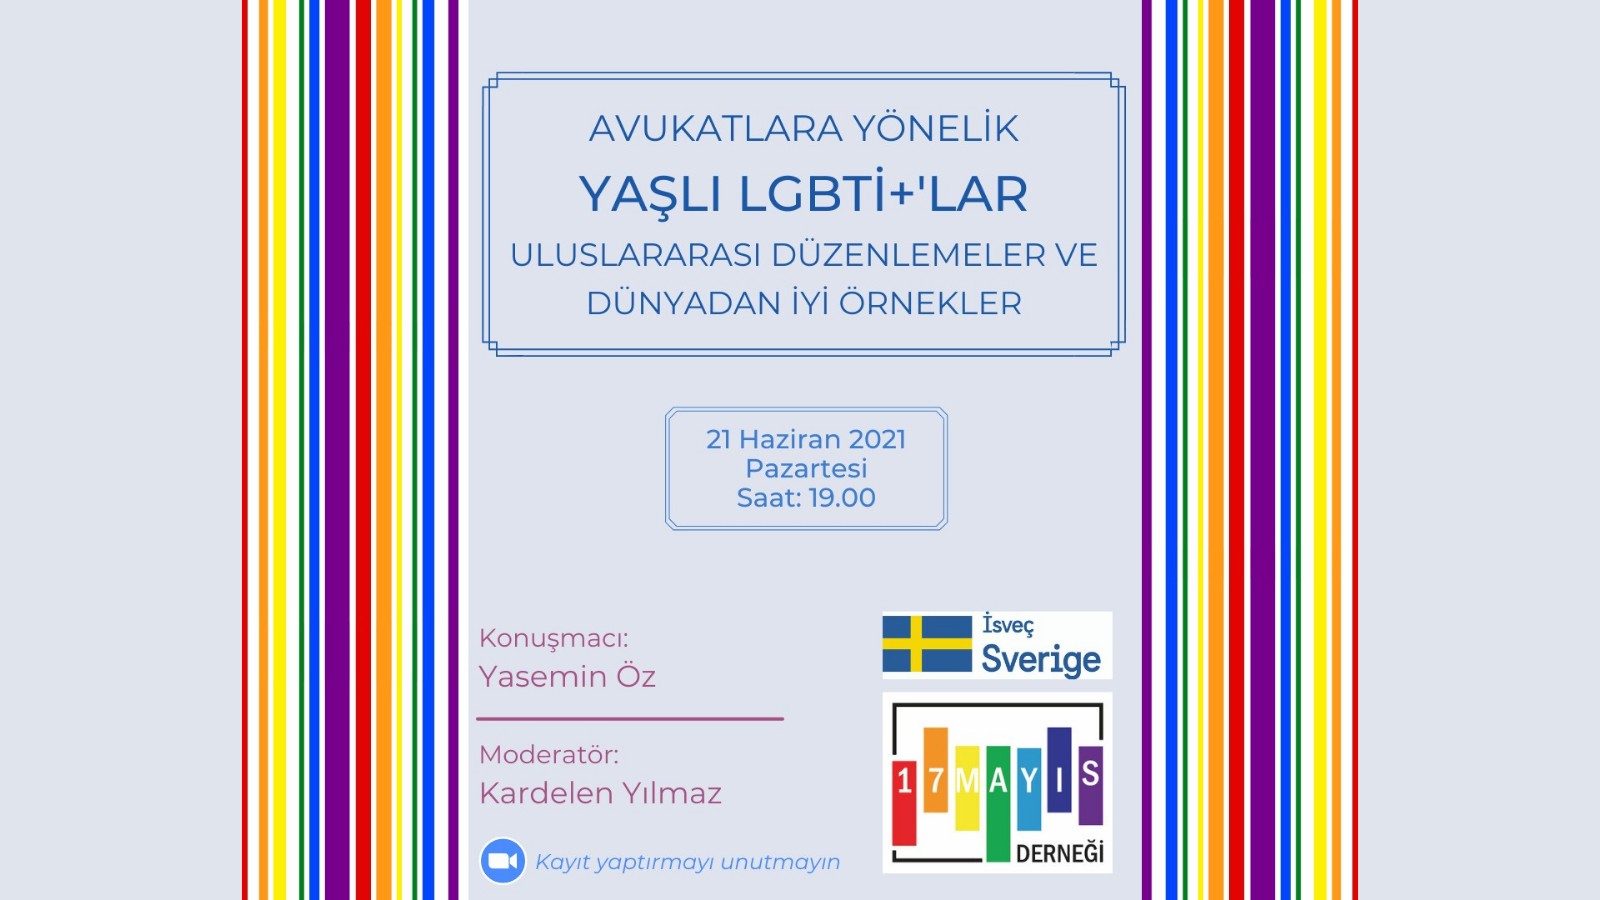 Avukatlara Yönelik "Yaşlı LGBTİ+'lar" Eğitimi Bu Akşam! - 17 Mayıs